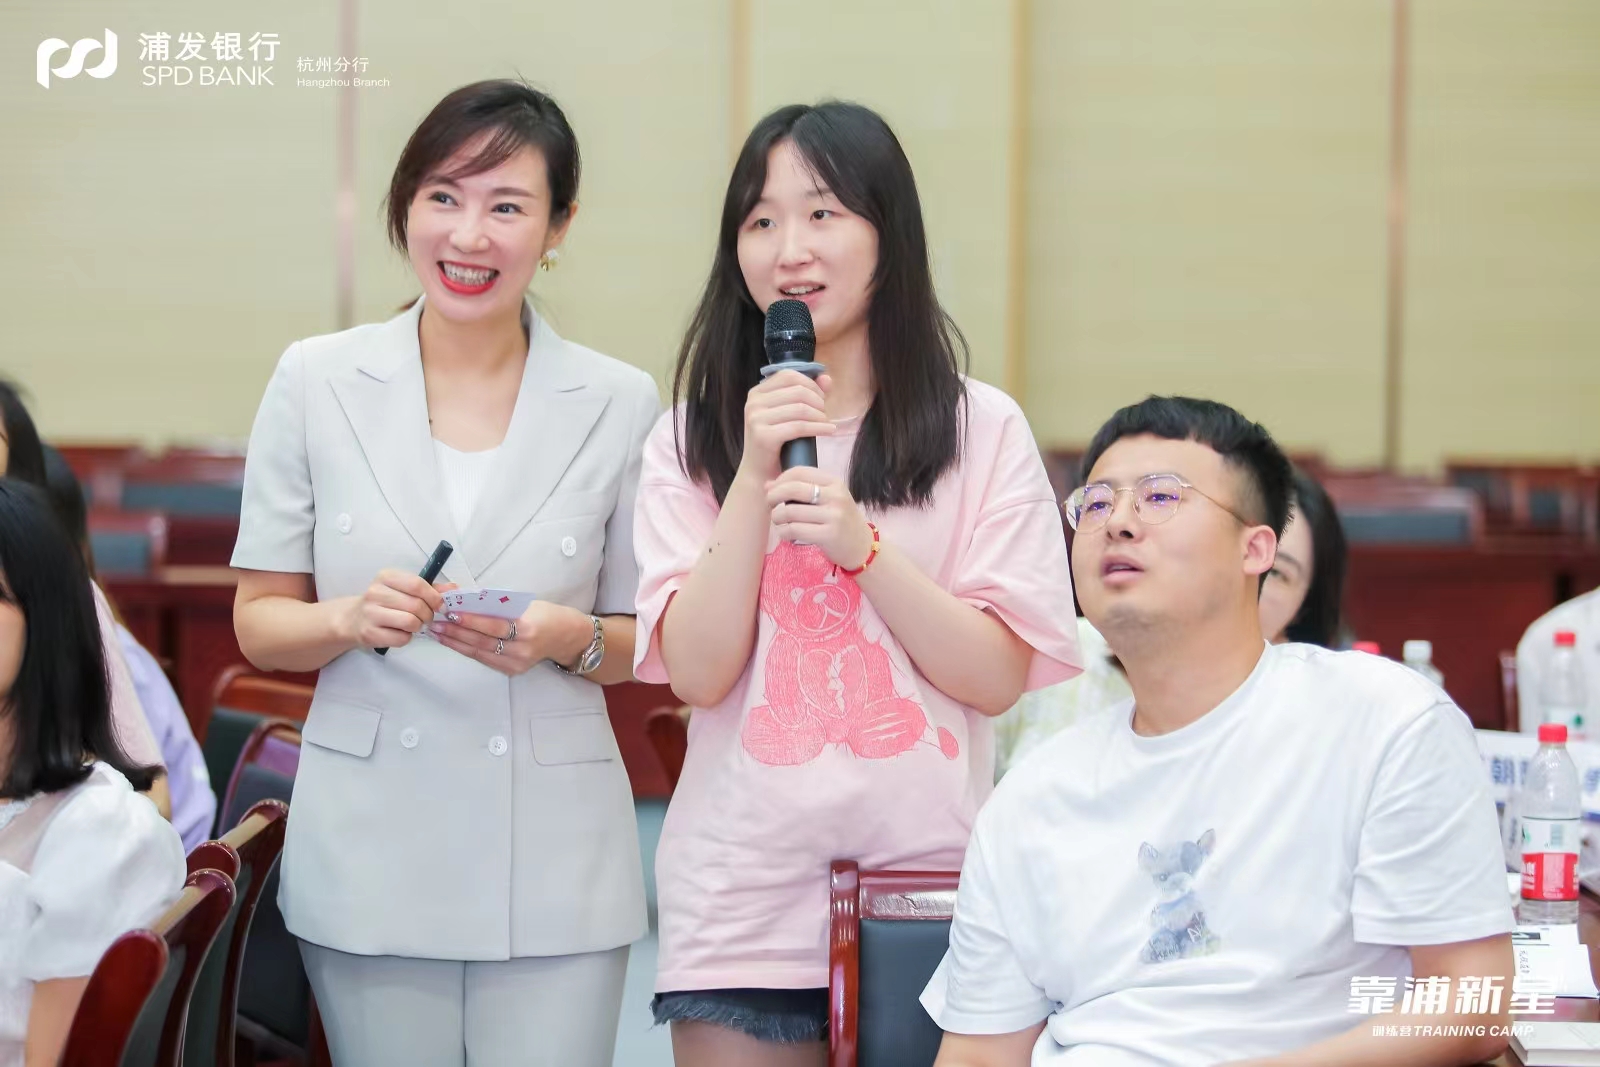 王晓茹老师2022年7月2号在杭州给某银行的新员工讲授《商务礼仪与职业素养》